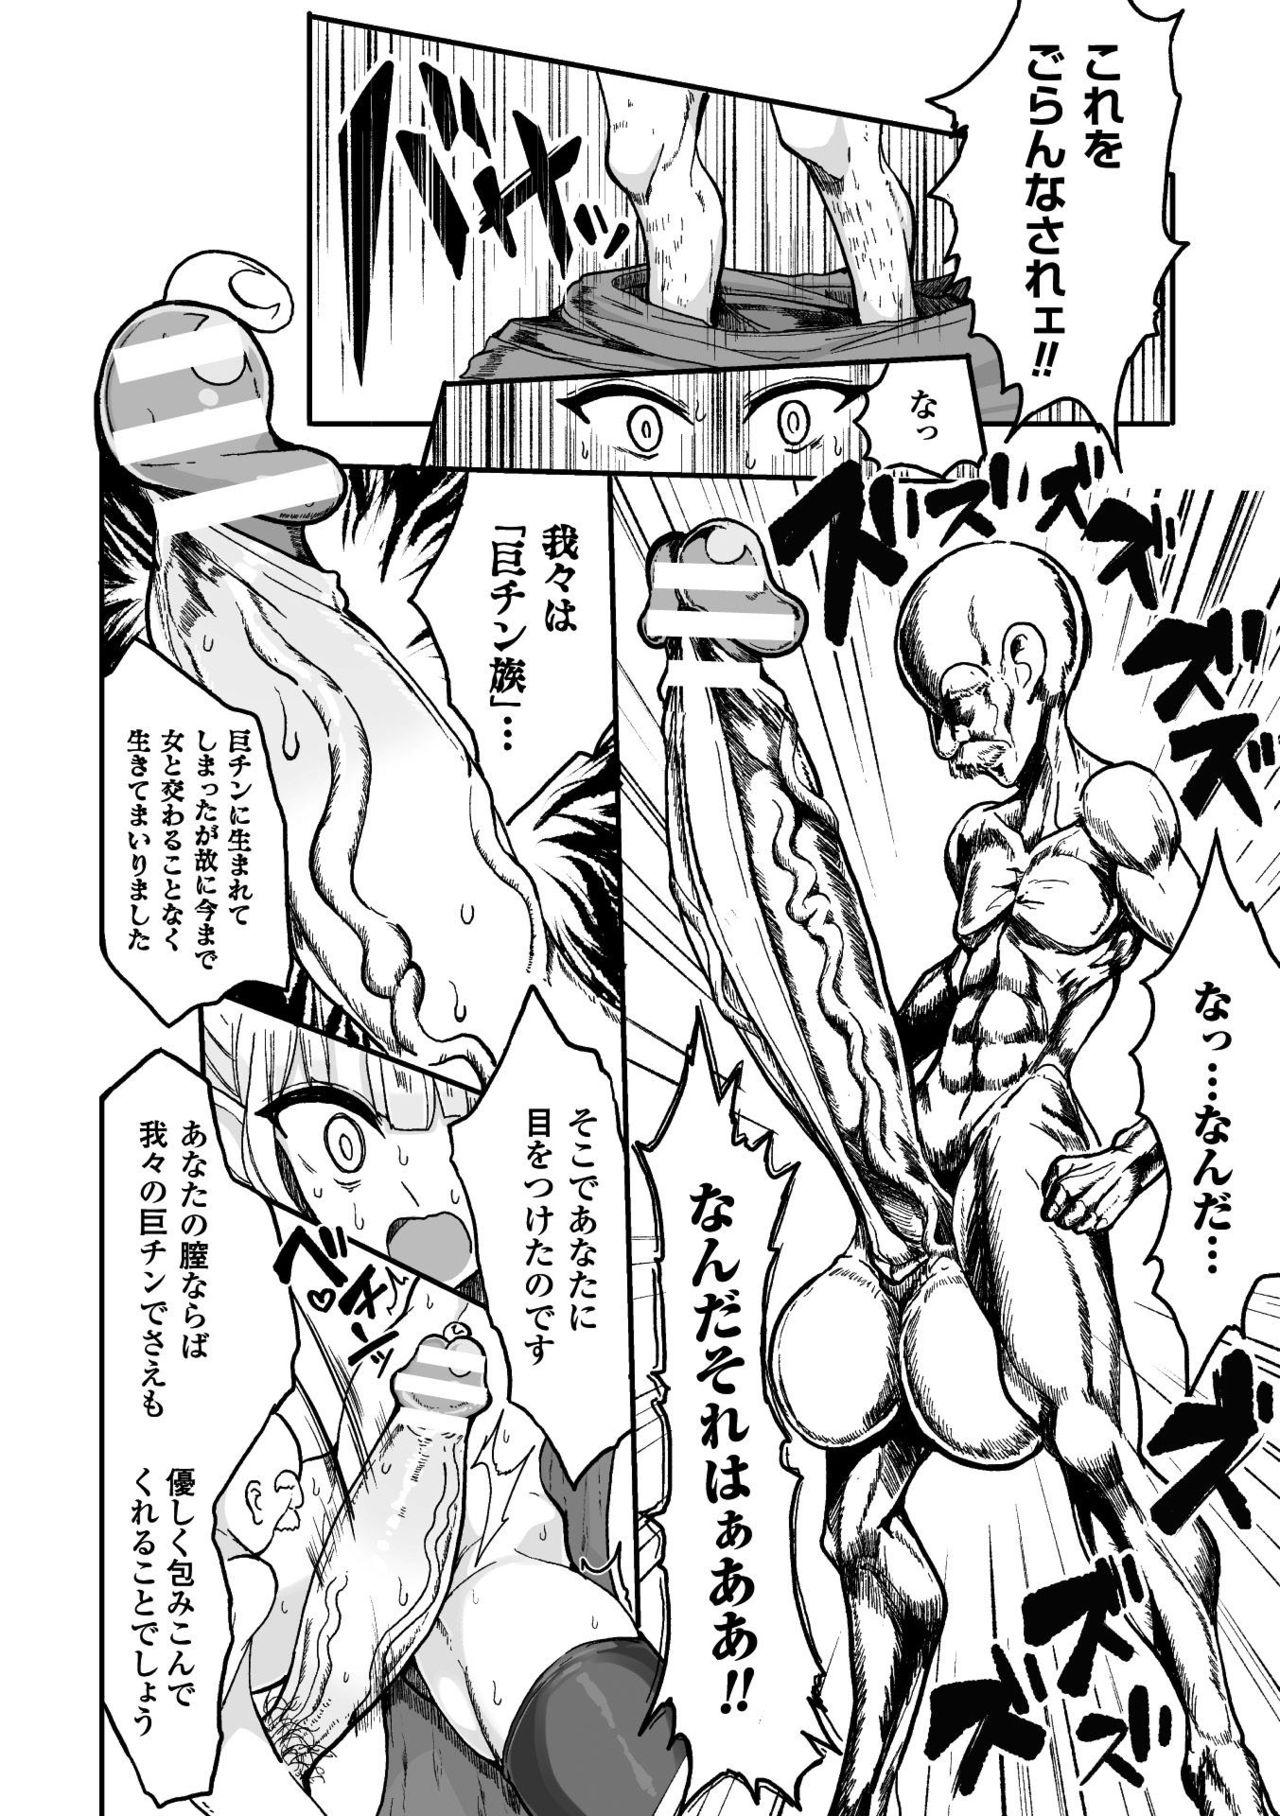 Atm Kyojinzoku No Onna Kishi VS Goblin Gundan Sharing - Page 10